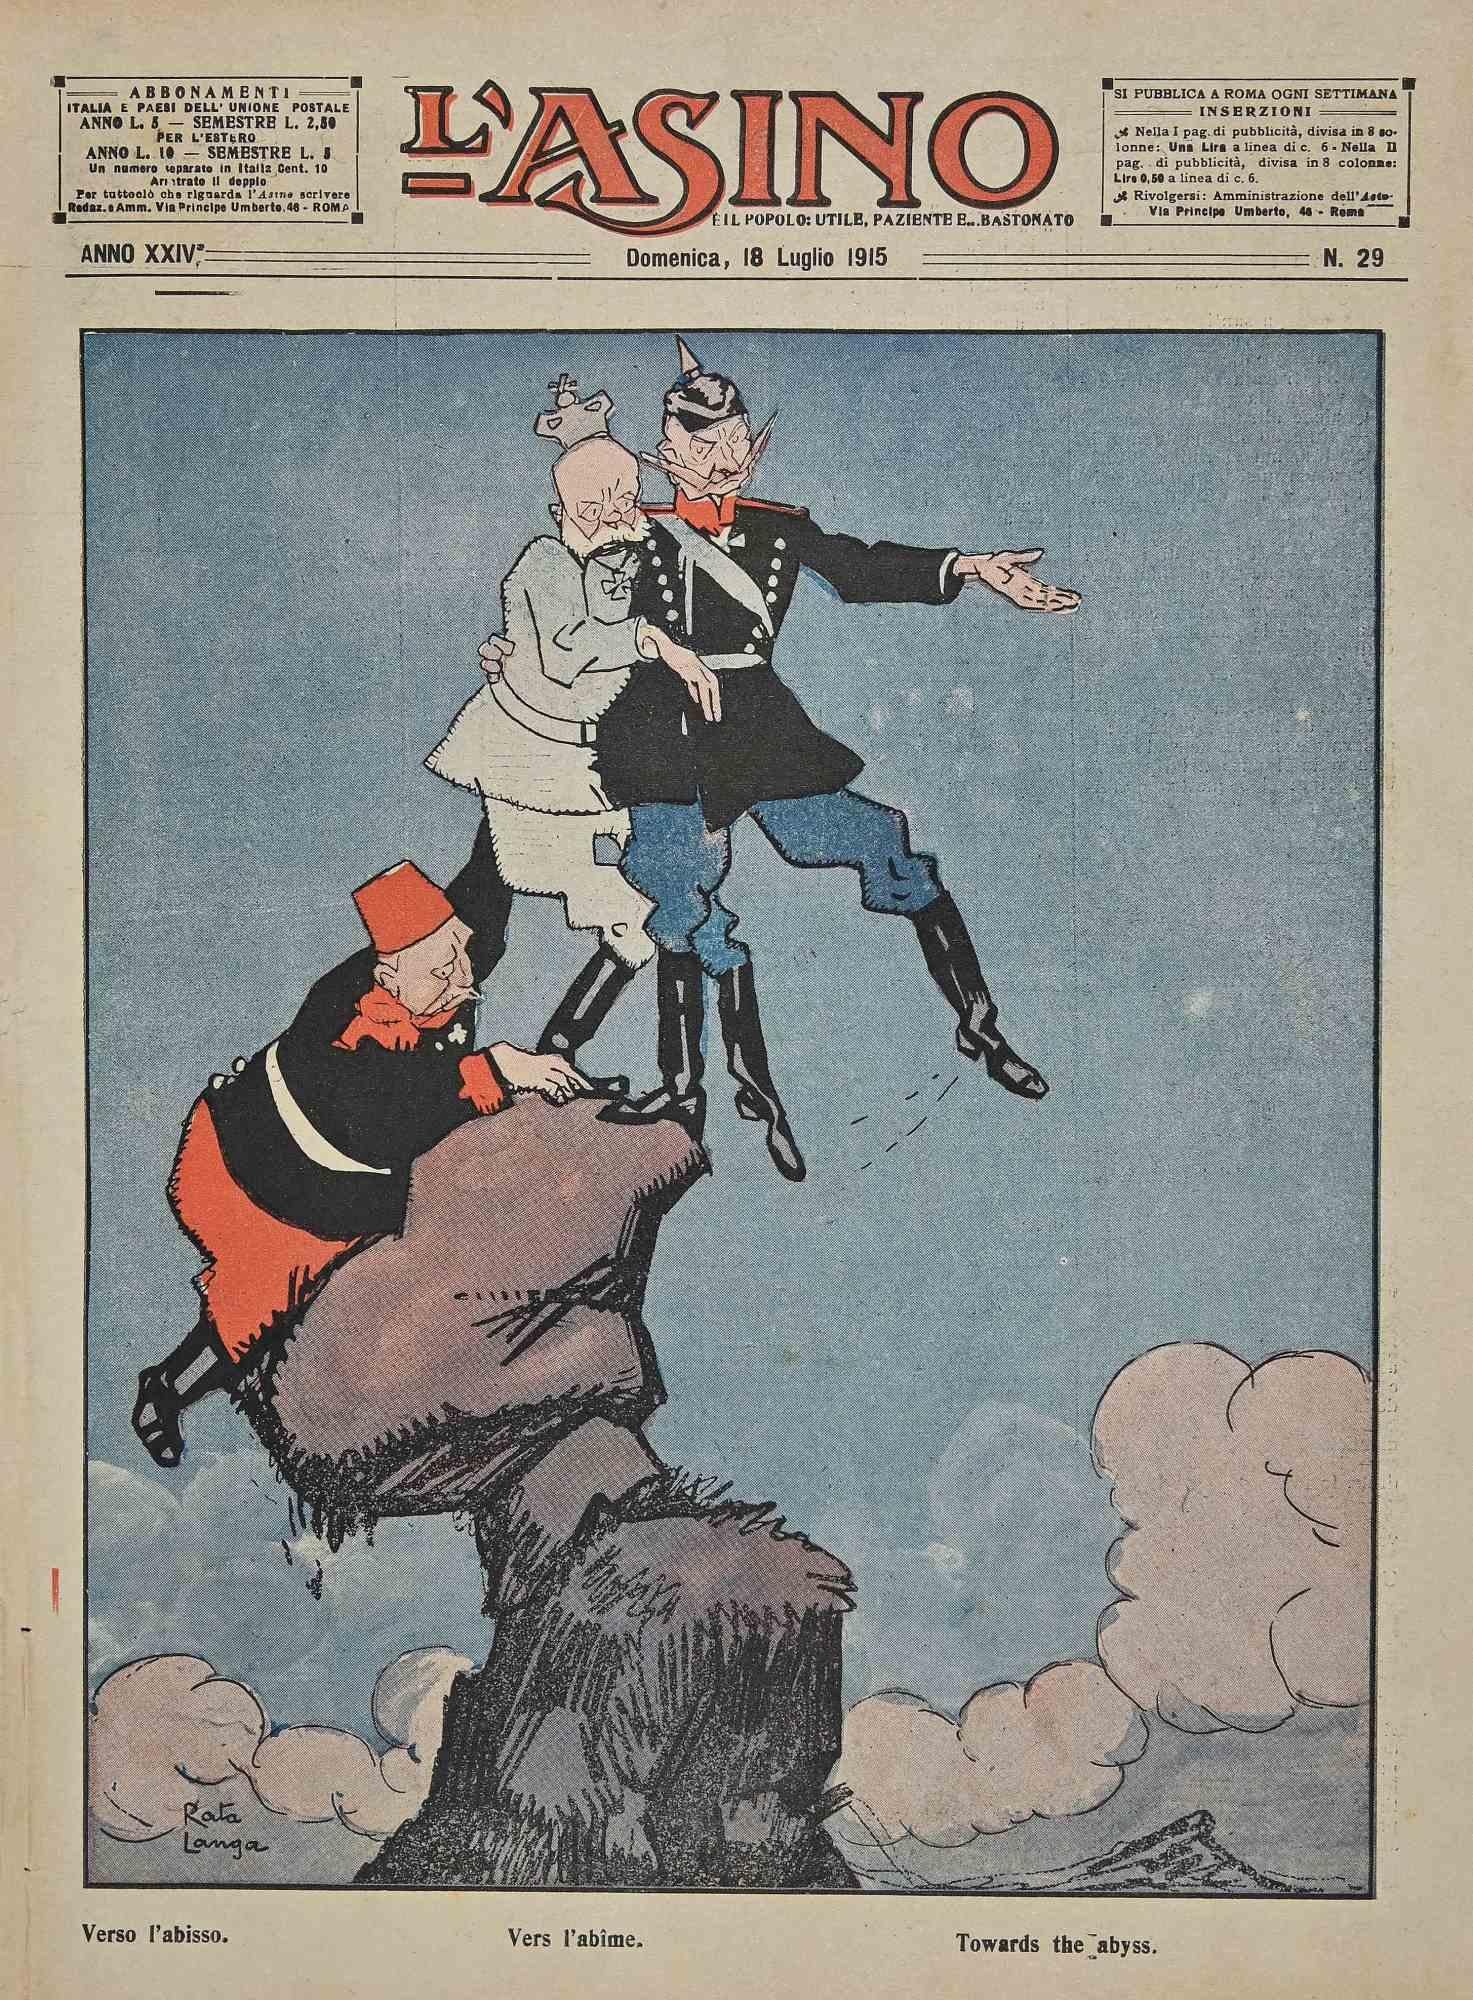 L'Asino, Kunstmagazin, Jahr 24, Nr. 29, 1915 – Art von Unknown